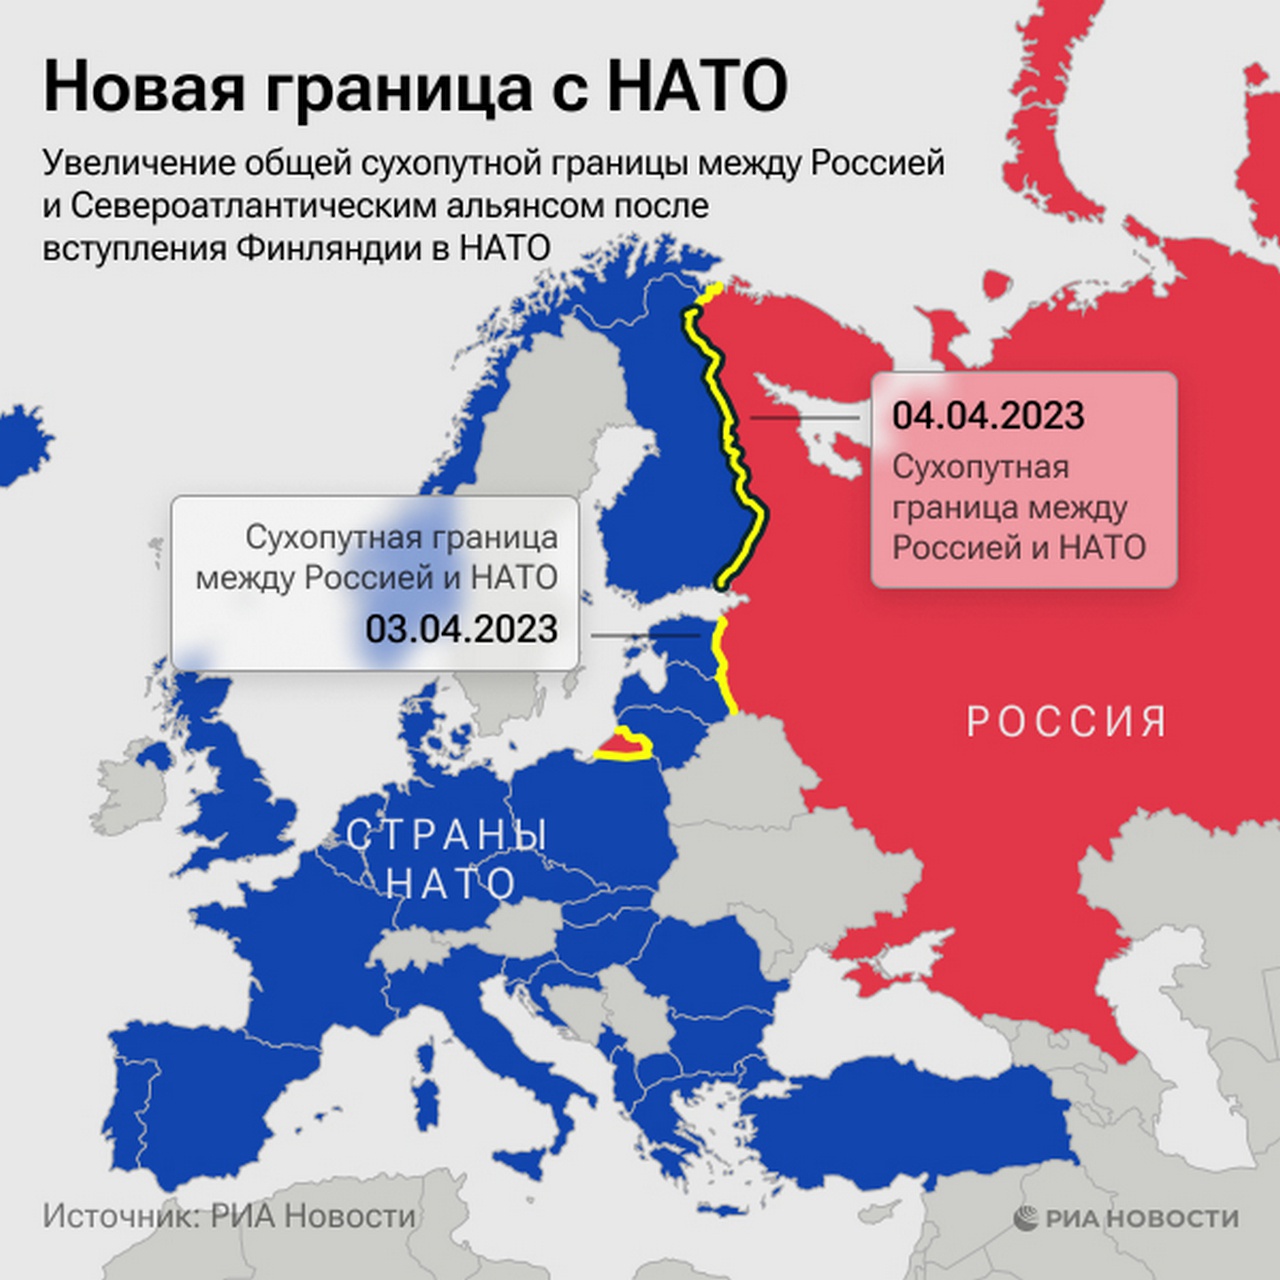 Увеличение общей сухопутной границы между Россией и Североатлантическим альянсом после вступления Финляндии в НАТО.